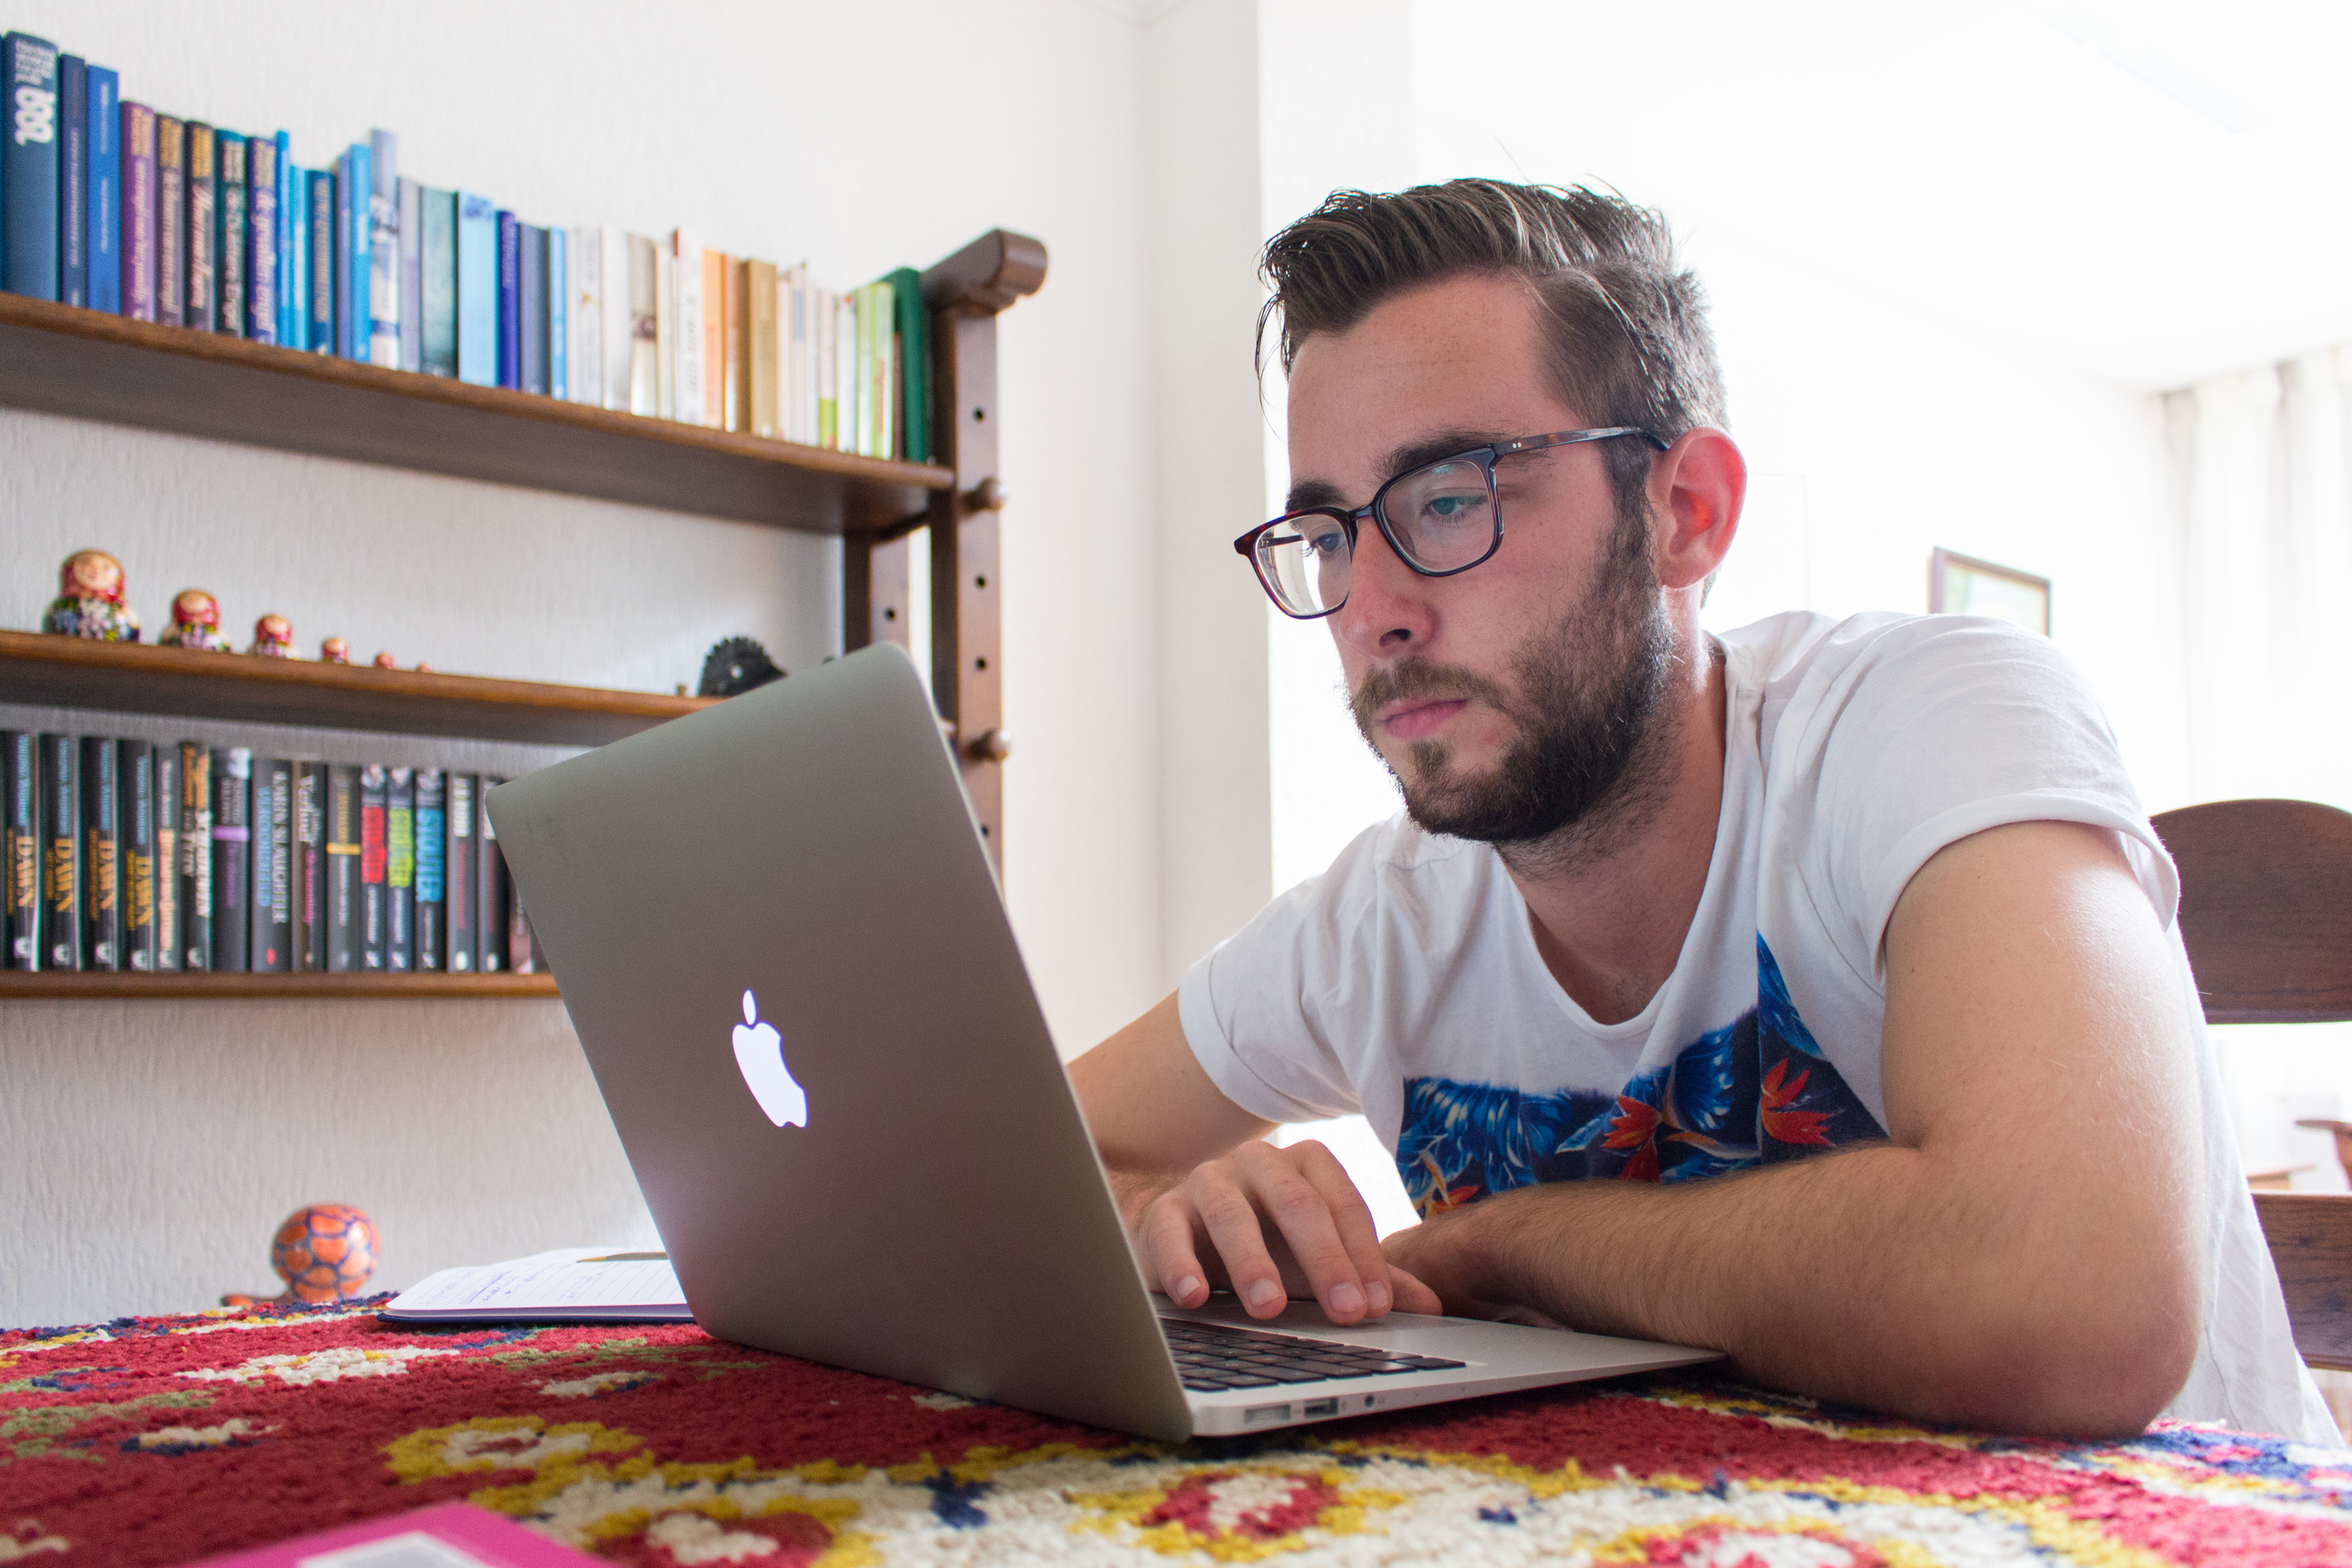 Arnoud van der Struijk achter zijn laptop in de huiskamer bezig met het selecteren van interessante artikelen voor de dagelijkse Blendle-nieuwsbrief. Foto: Joris van der Struijk.